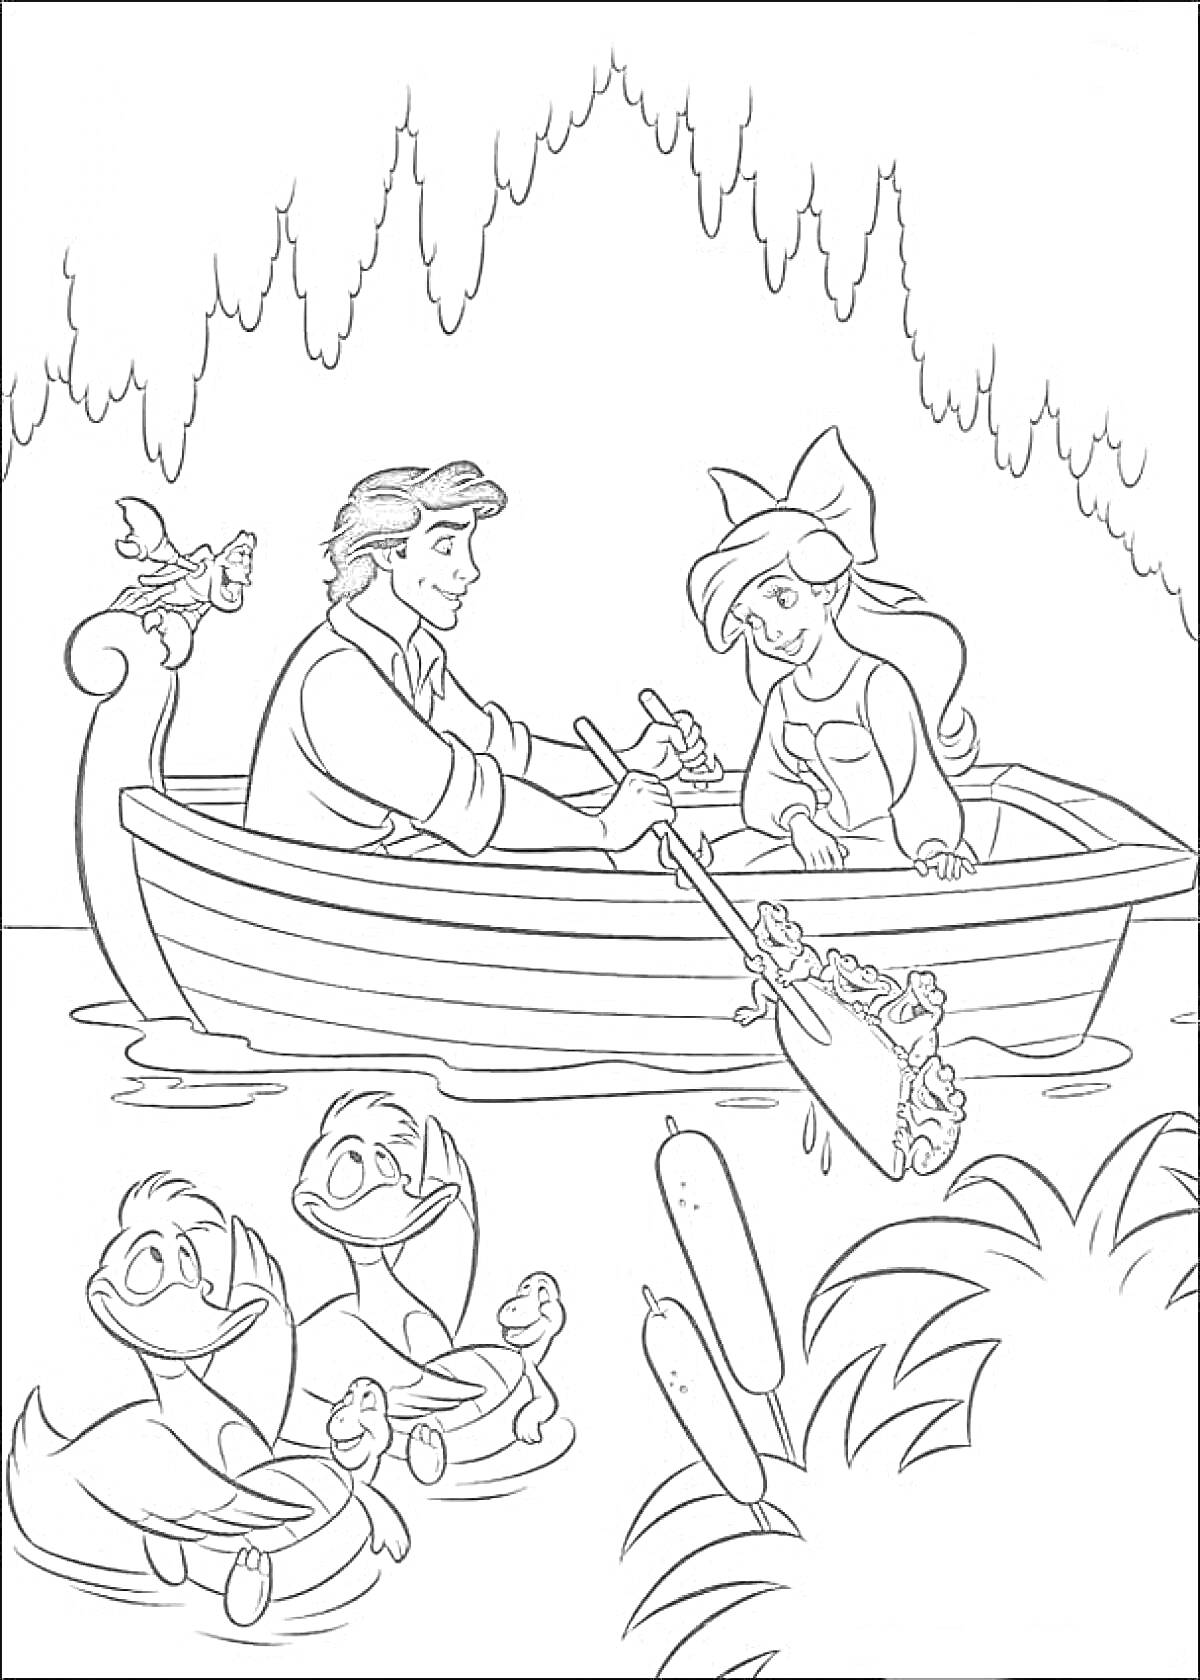 Ариэль и принц Эрик в лодке с птицей и утками, плавающими рядом с камышами